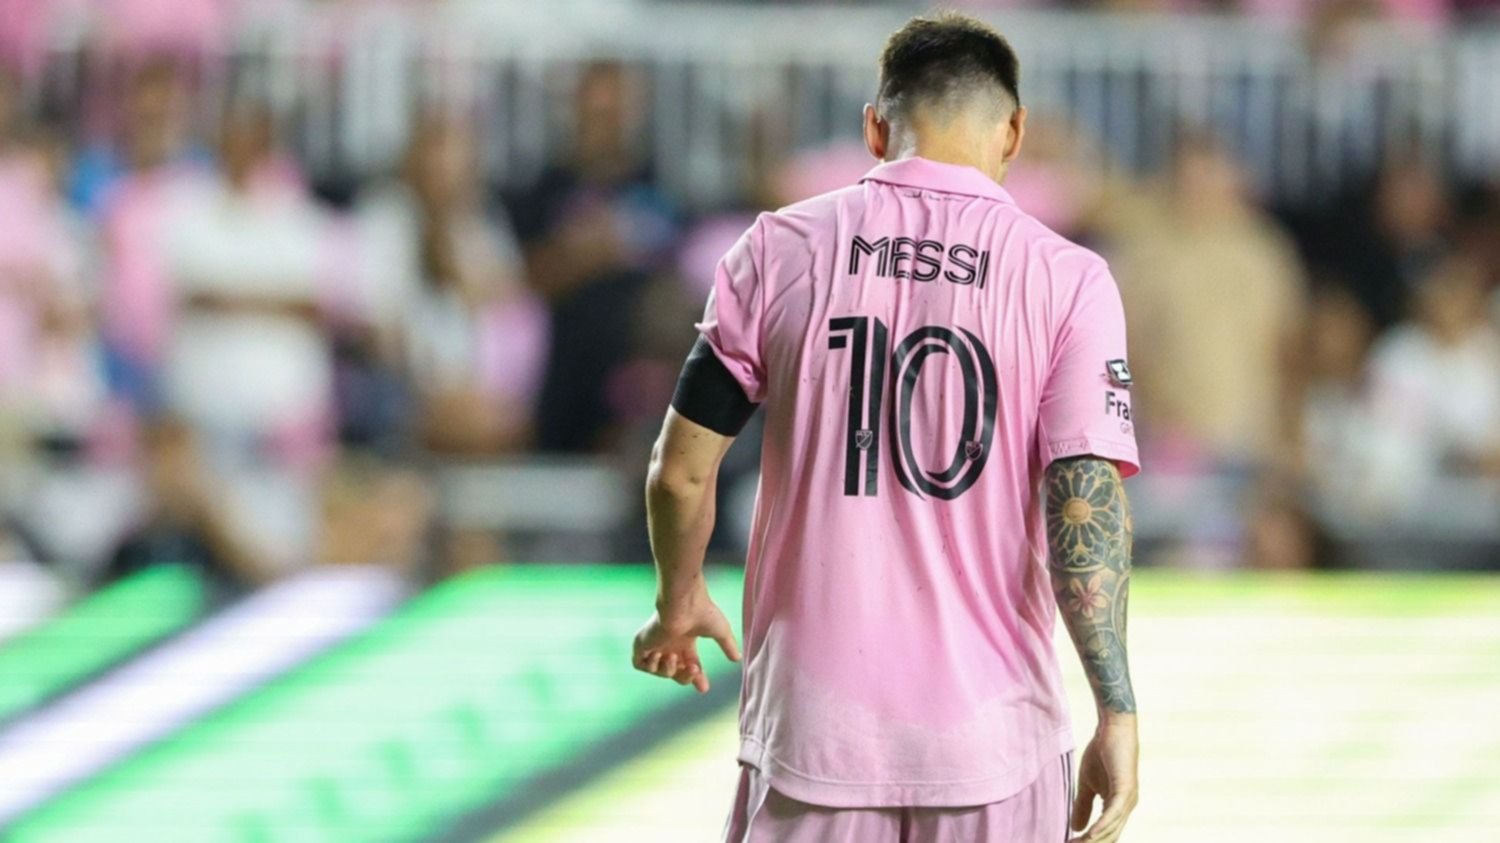 La fortuna del jugador del Inter Miami que es más rico que Messi